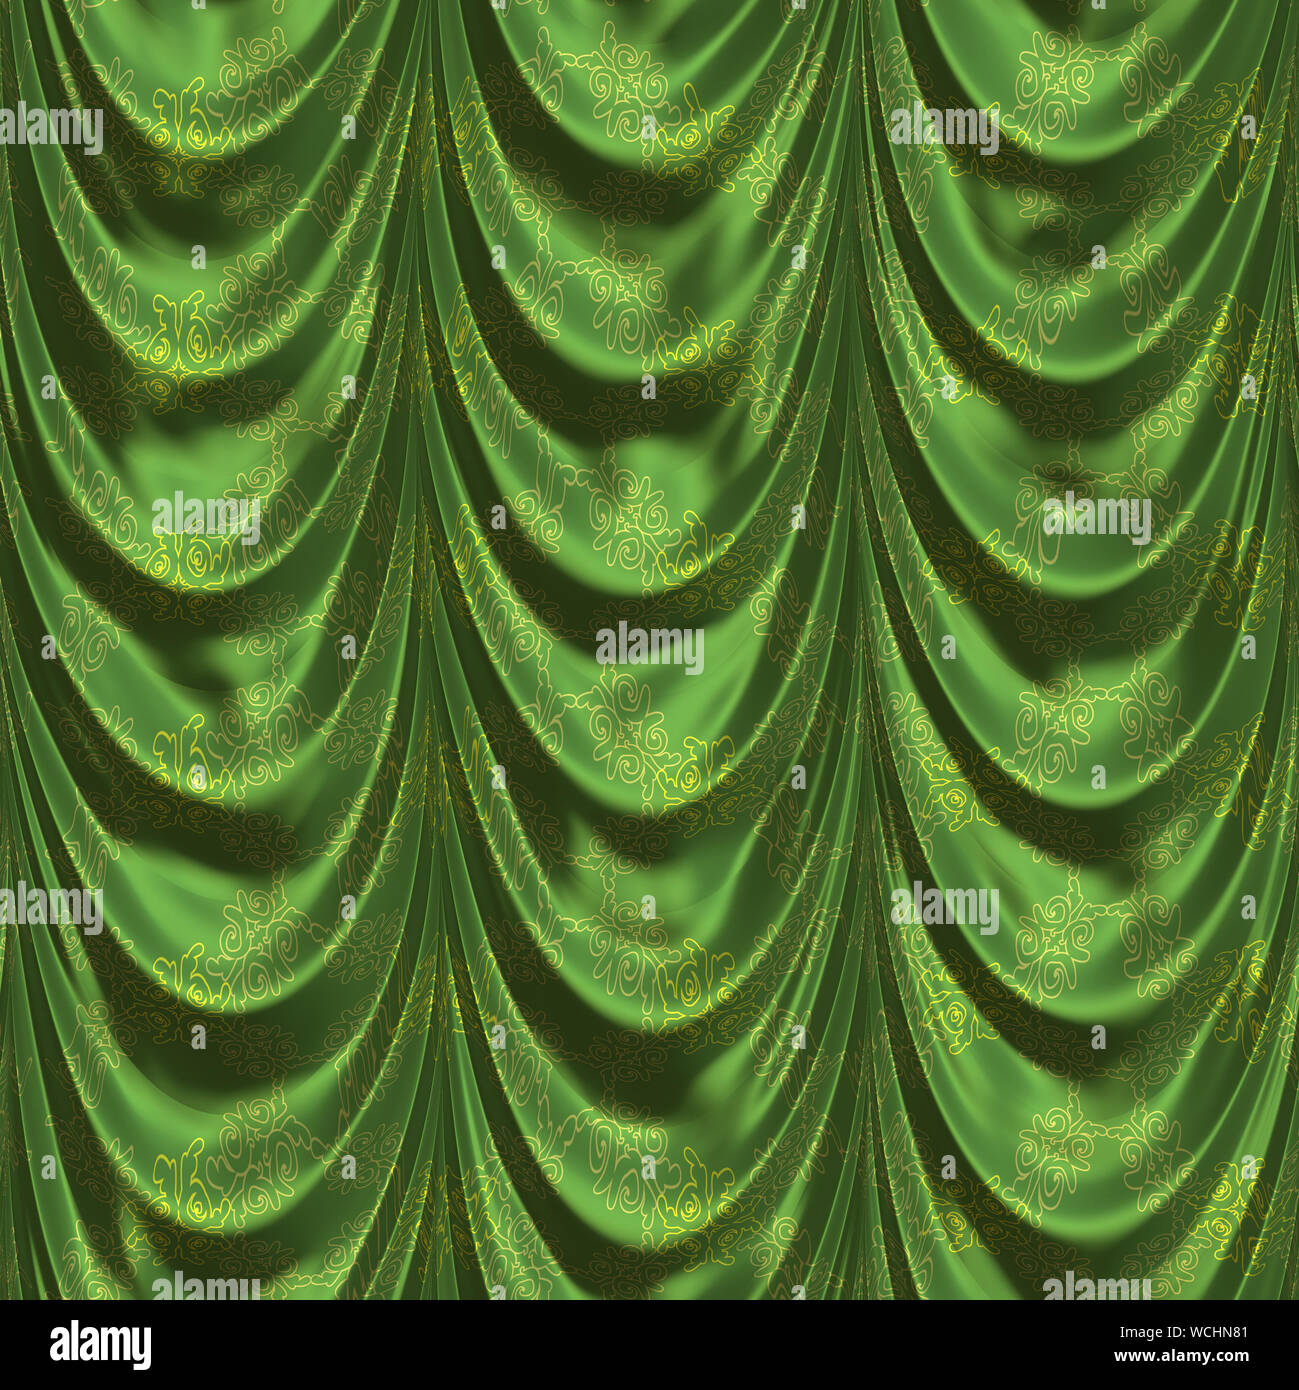 Vintage green satin Vorhänge mit Muster Hintergrund Stockfotografie - Alamy